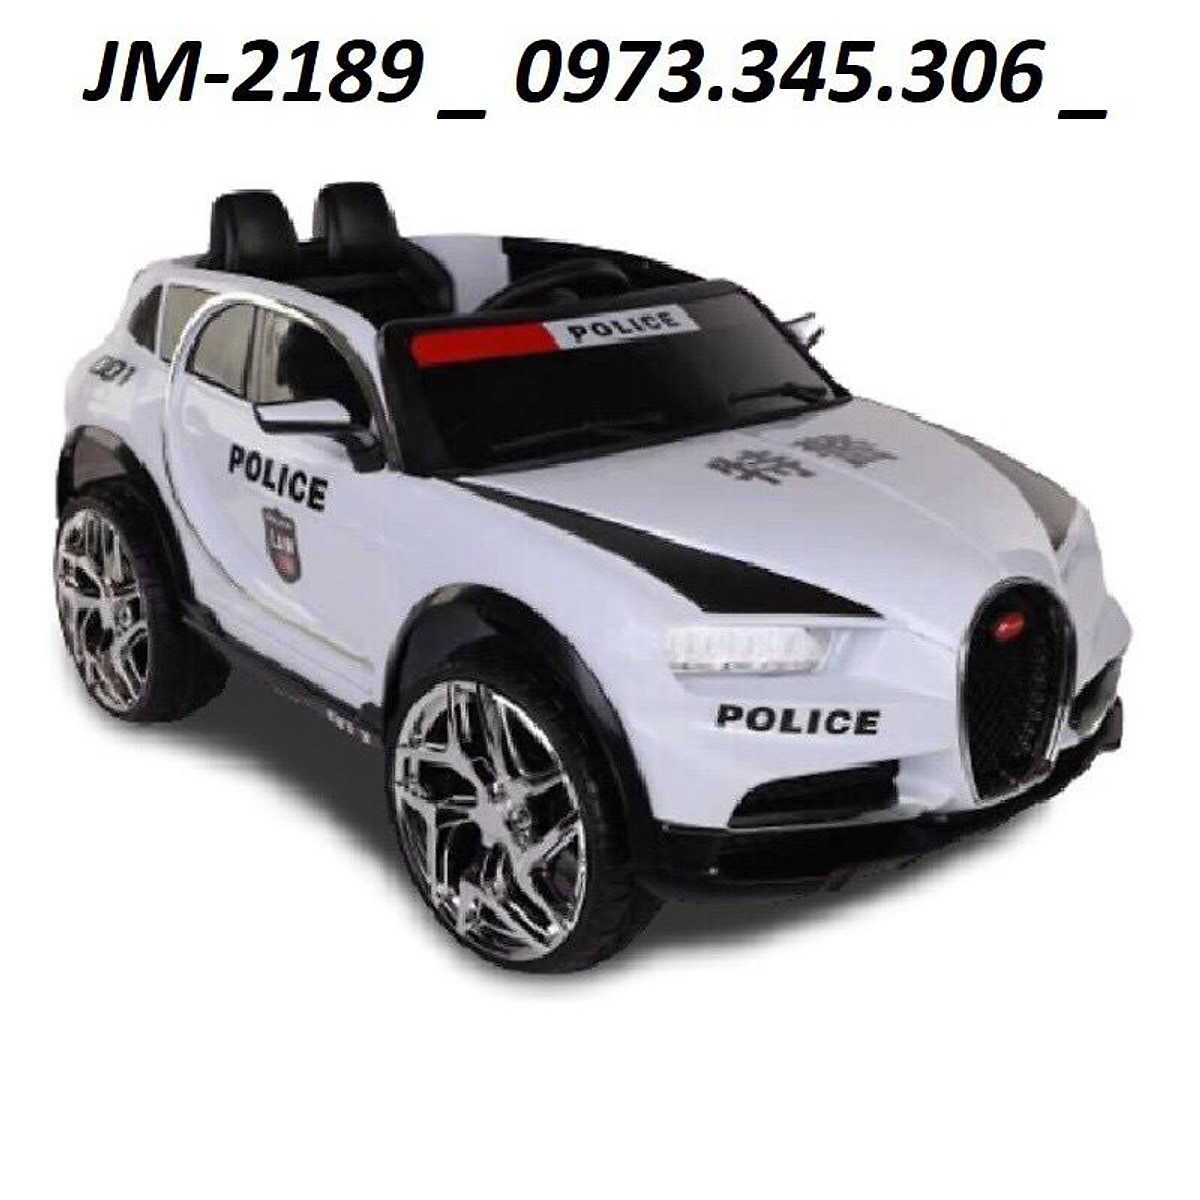 Ô tô xe điện trẻ em cảnh sát BABY KID JM-2189 2 chỗ 2 chế